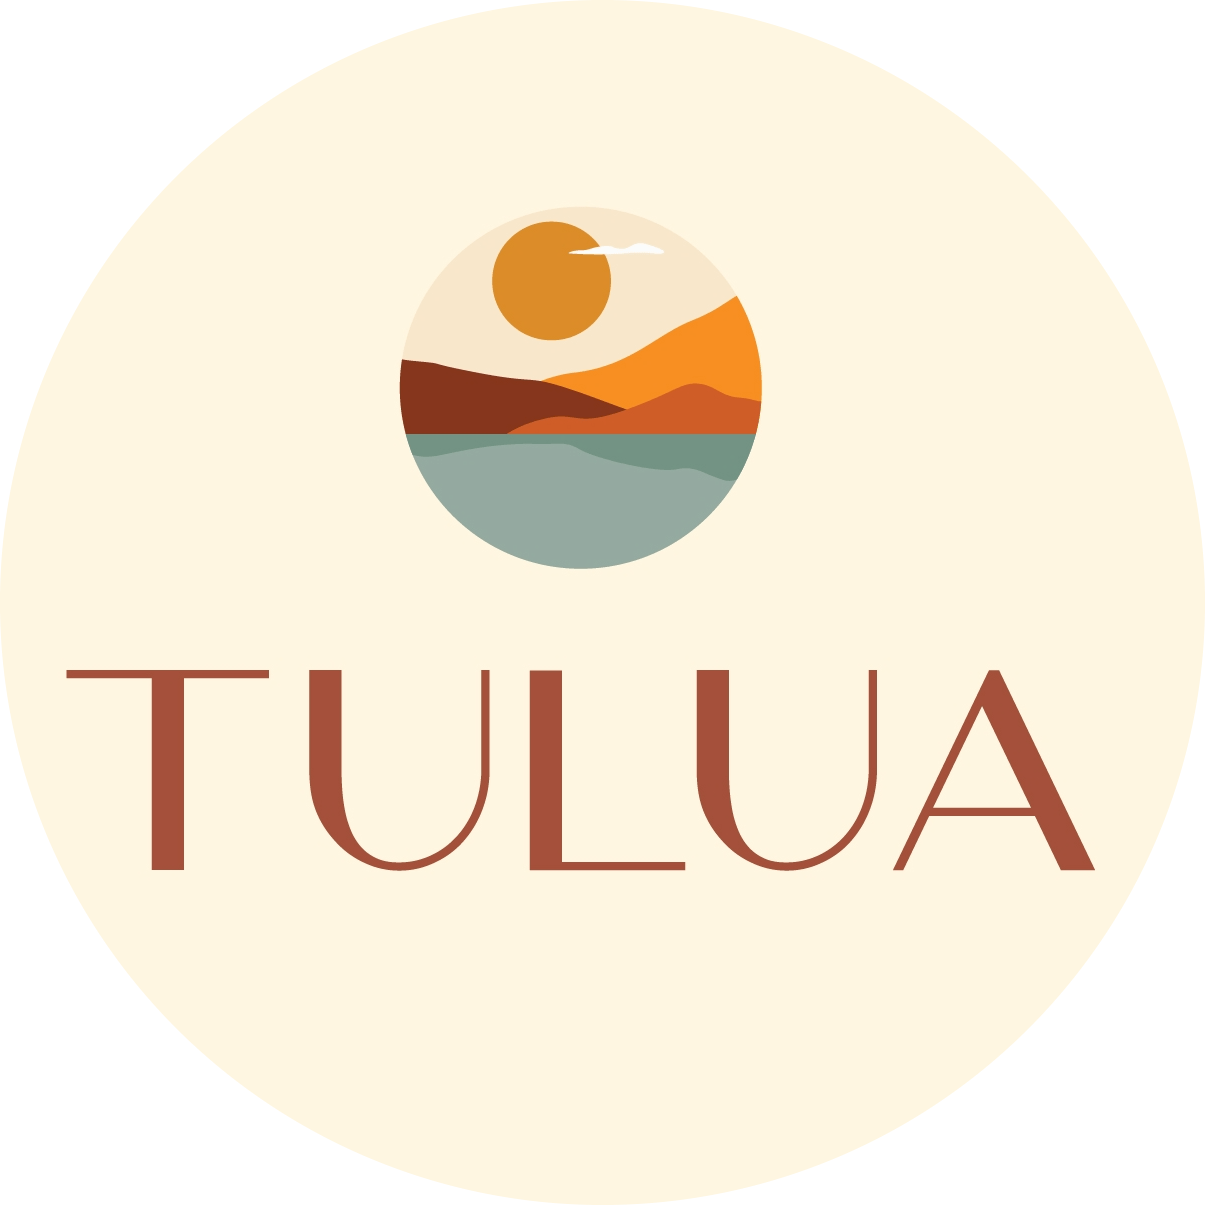 Tulua Development real estate company